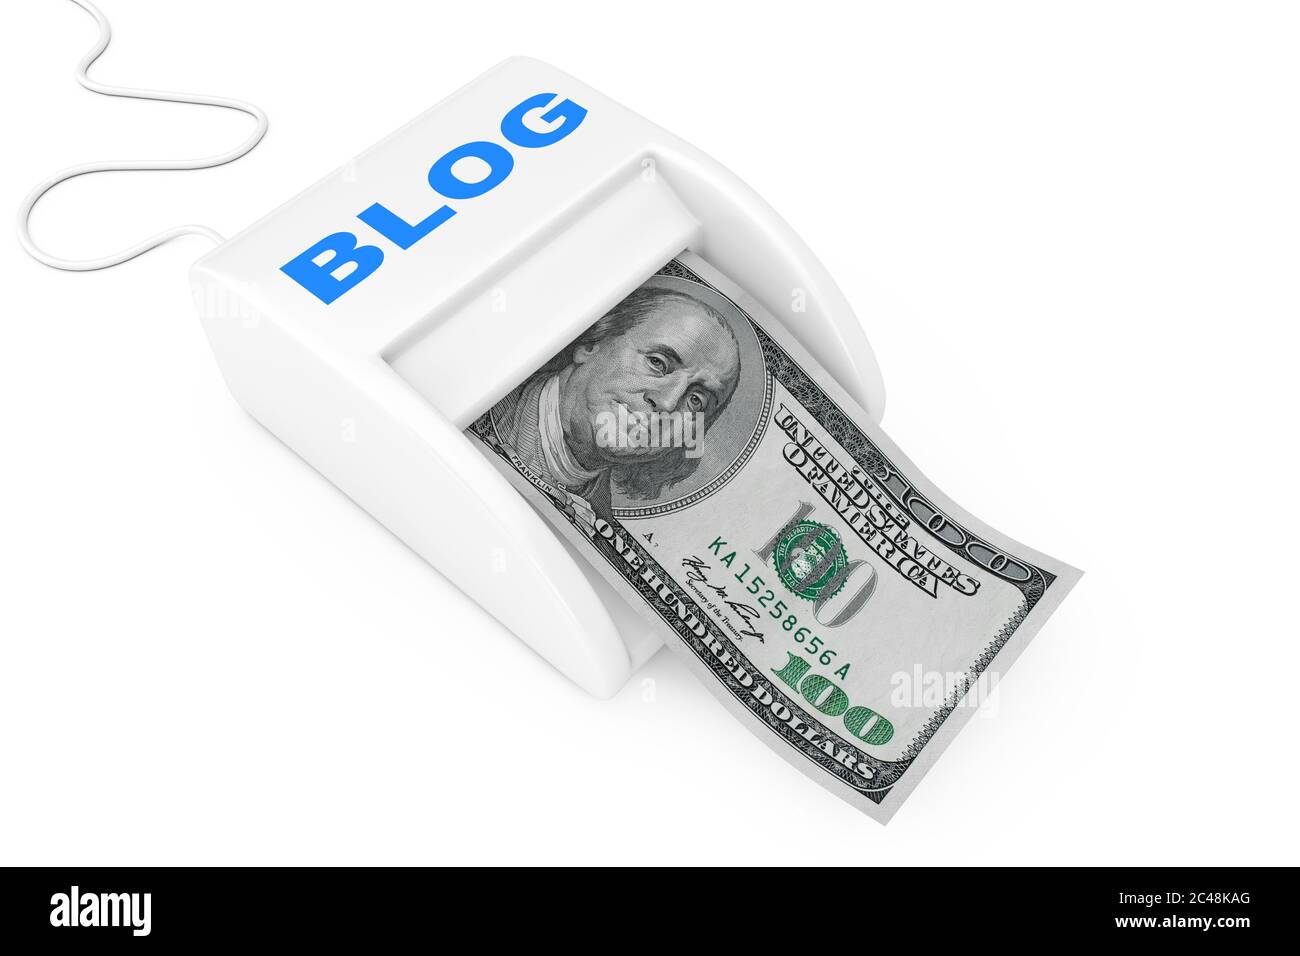 Blog kiếm tiền: Bạn đã bao giờ nghĩ về việc tạo ra một blog có thể kiếm tiền được chưa? Hãy tham gia vào cộng đồng của chúng tôi và được hỗ trợ để tạo ra một blog độc đáo và chuyên nghiệp nhất. Bạn có thể viết về những sở thích của mình và kiếm được tiền một cách dễ dàng.